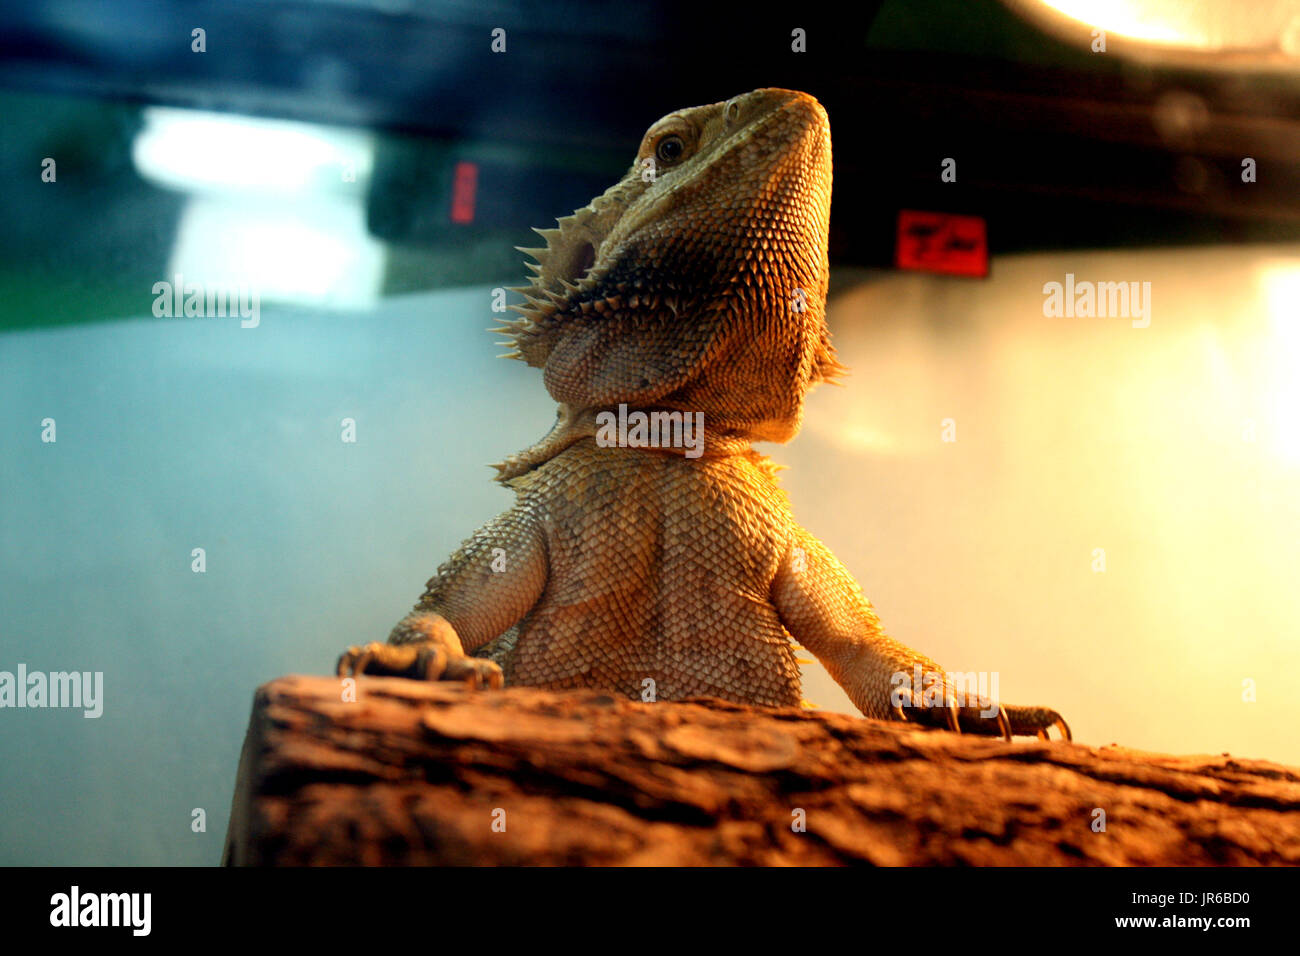 Fotografía de un dragón barbudo en un hábitat. Tomada en Fairfax, VA Foto de stock